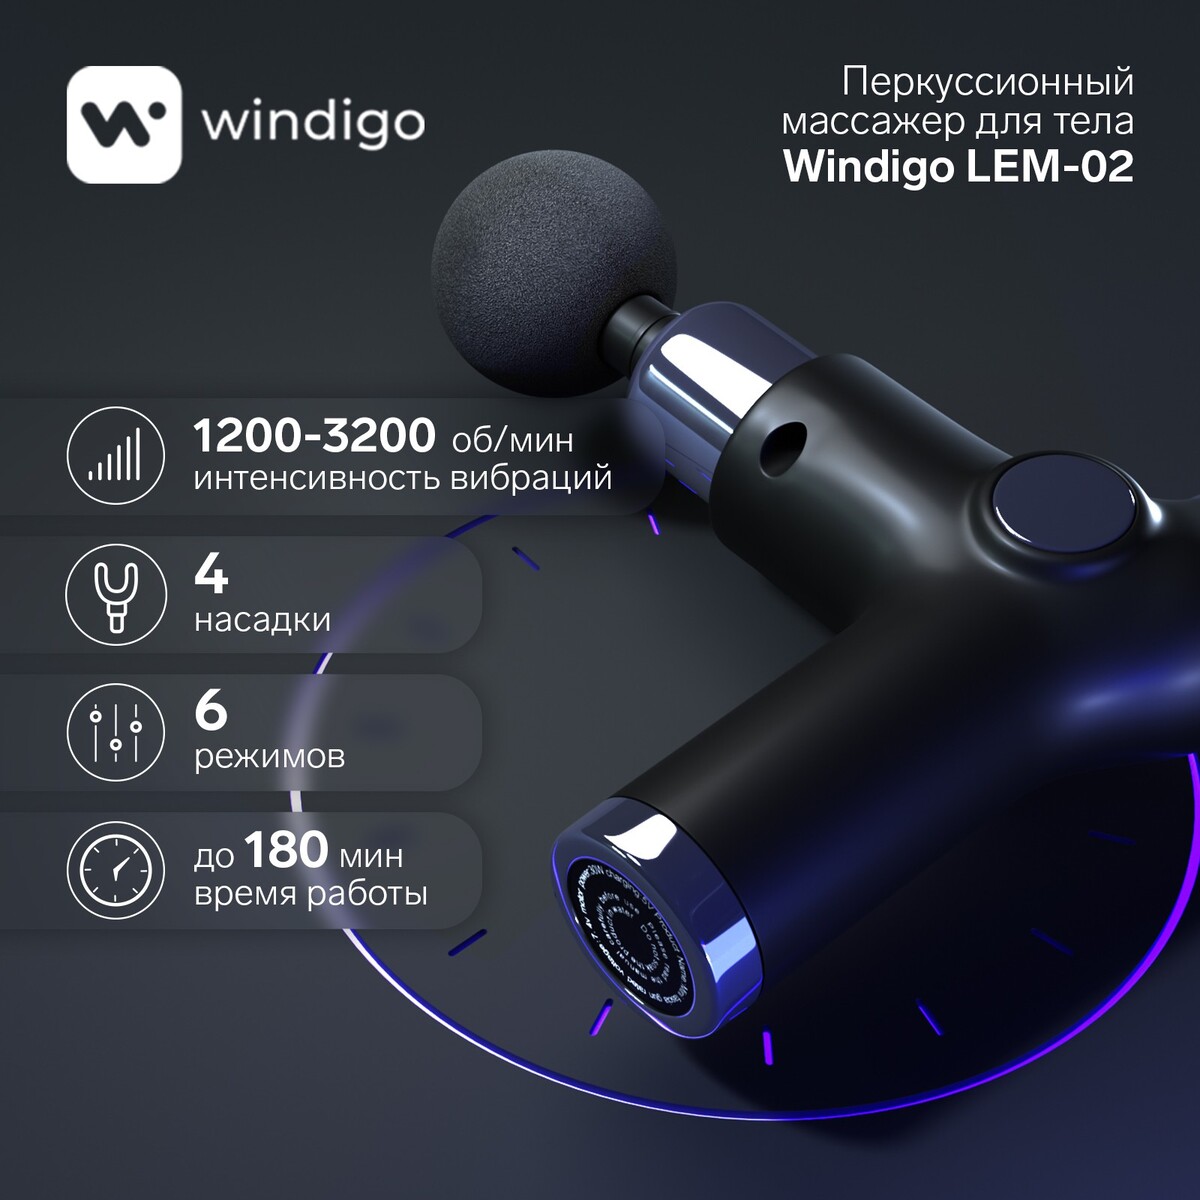 Массажер для тела windigo lem-02, перкуссионный, 4 насадки, 6 режимов, 1200-3200 об/мин